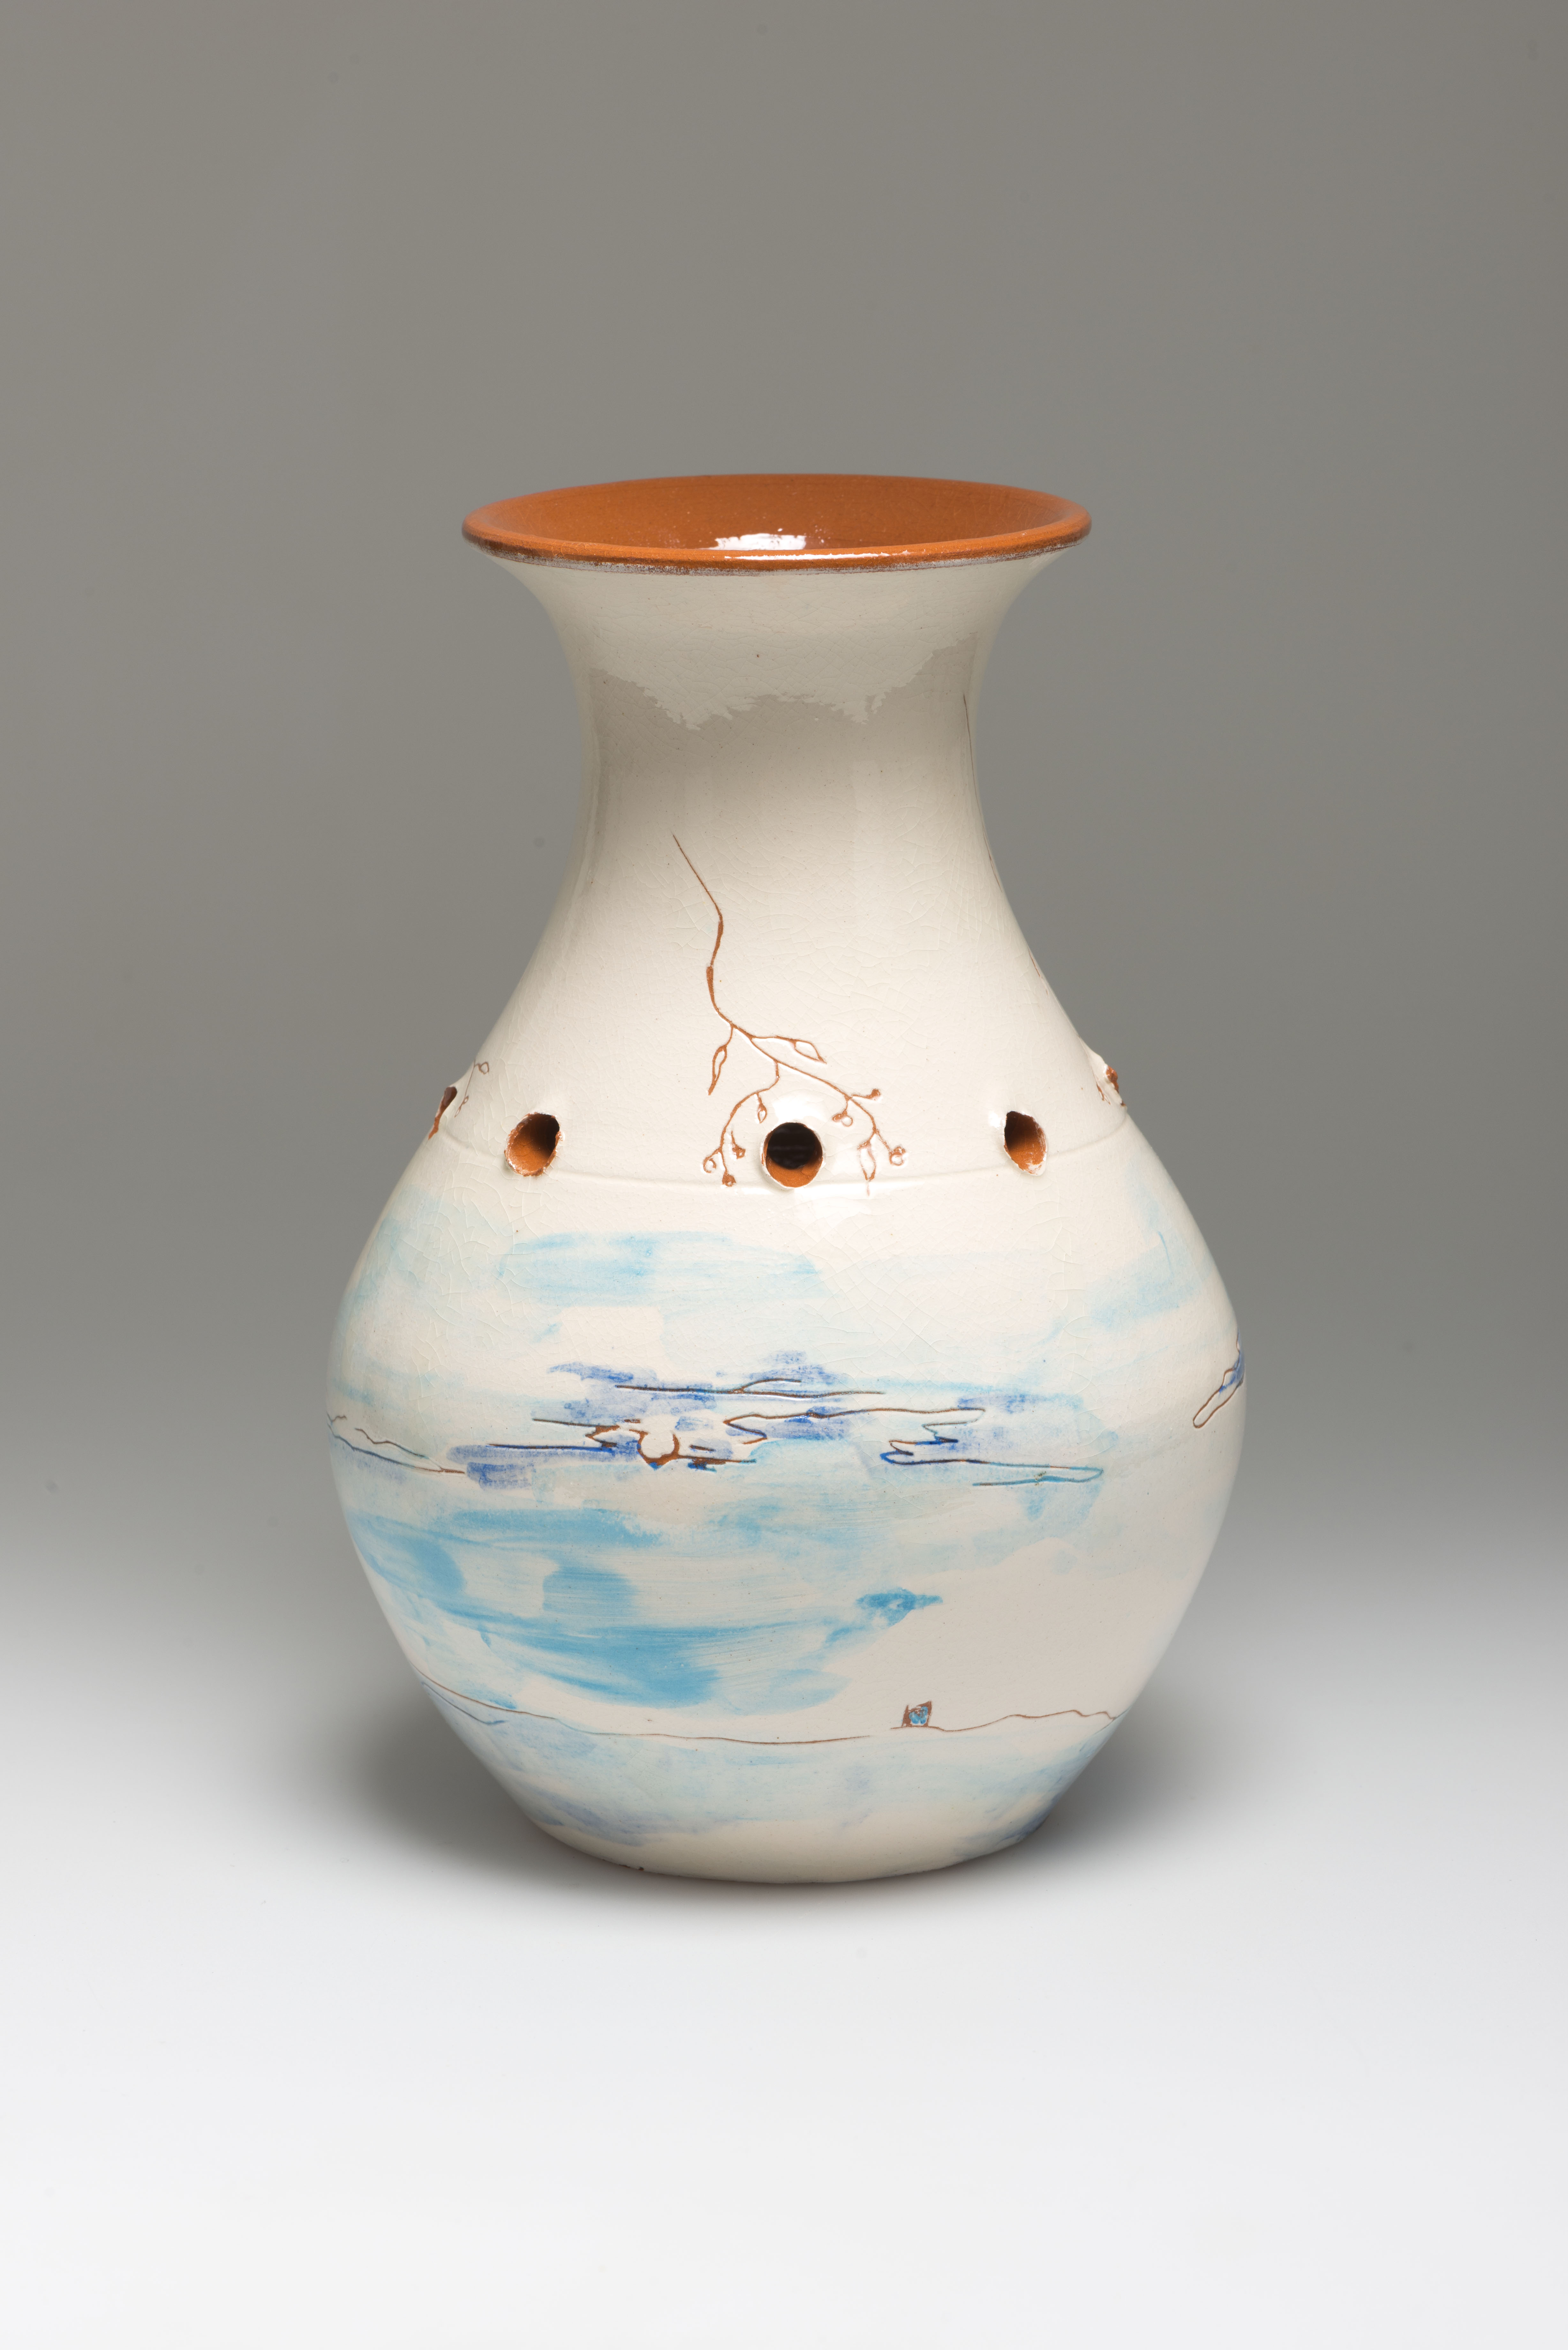 Flower Vase, ceramic, NL 2012